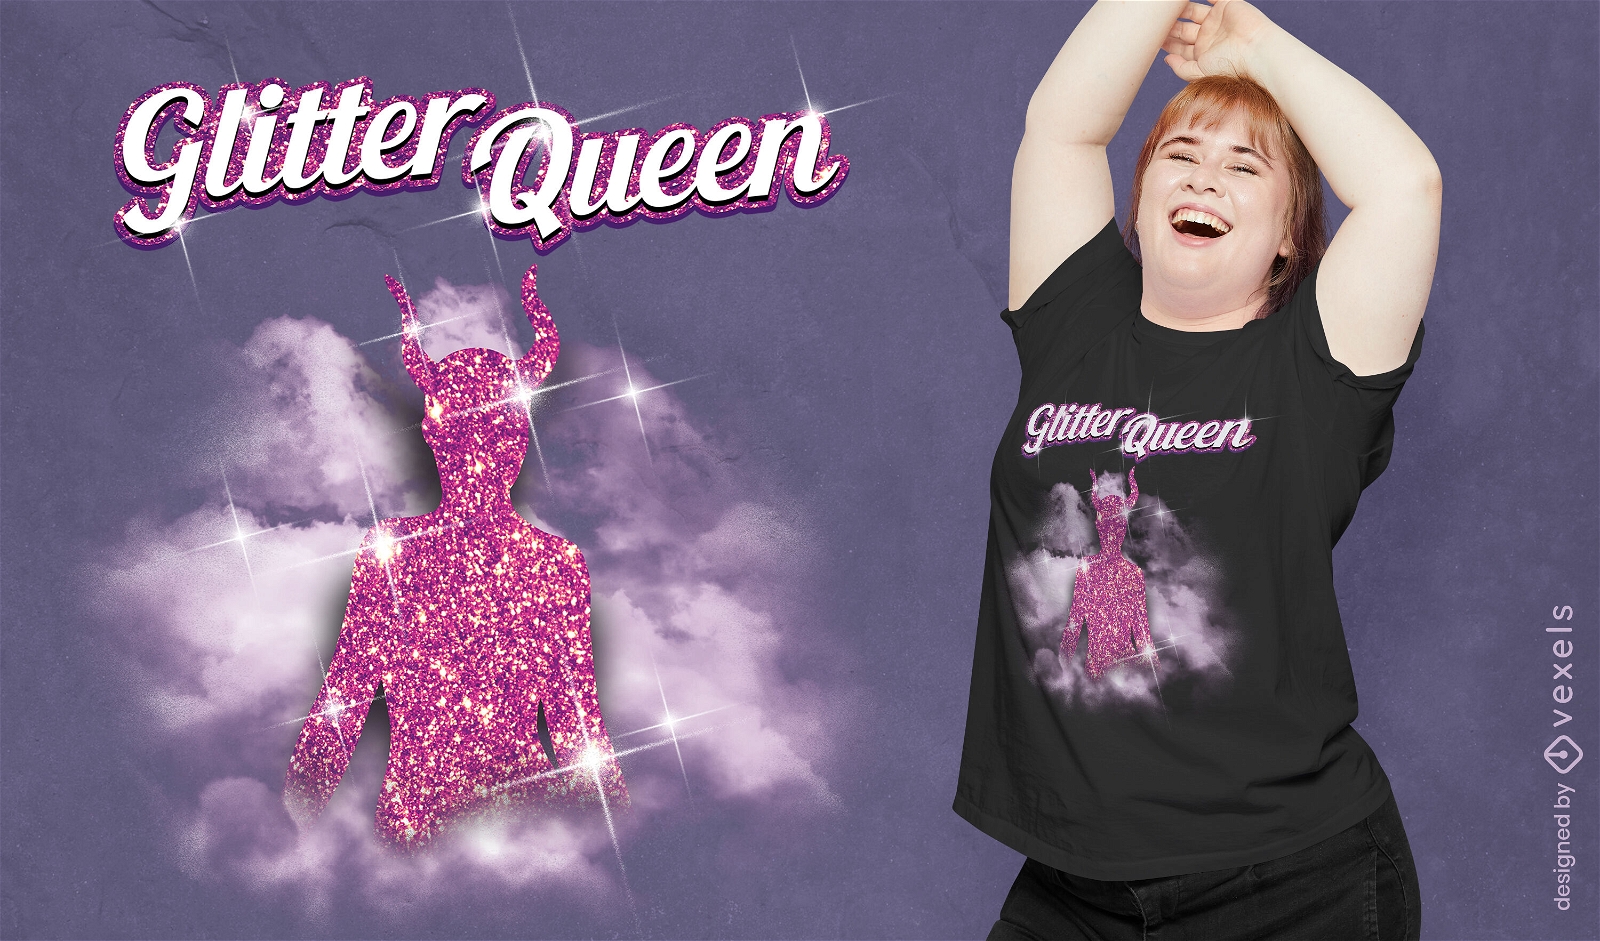 Glitter devil queen silhouette t-shirt psd